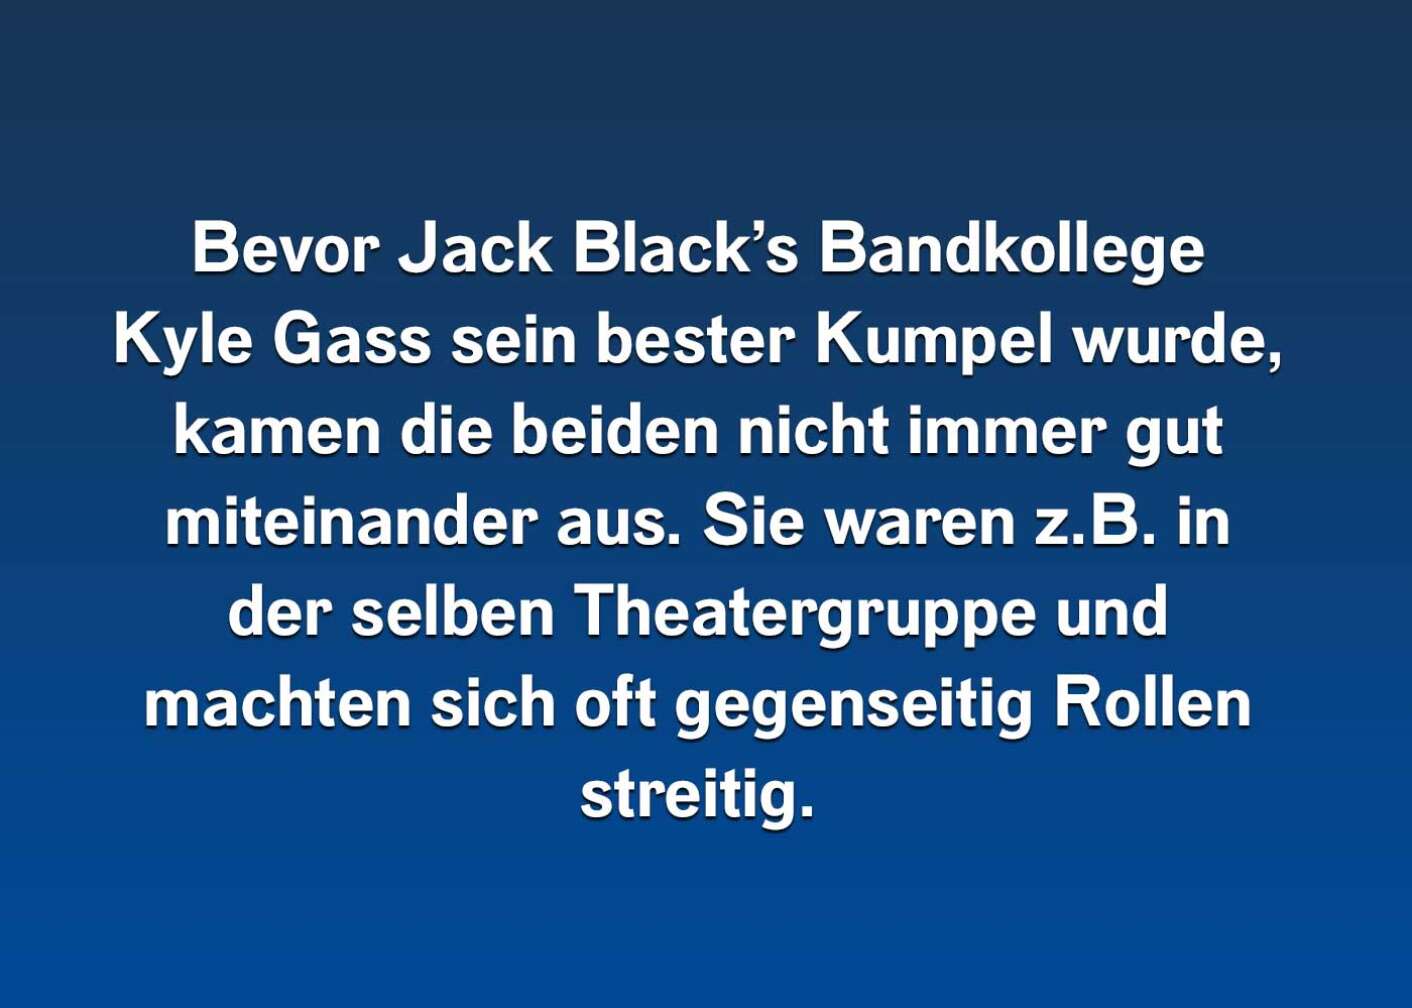 10 Fakten über Jack Black (7)